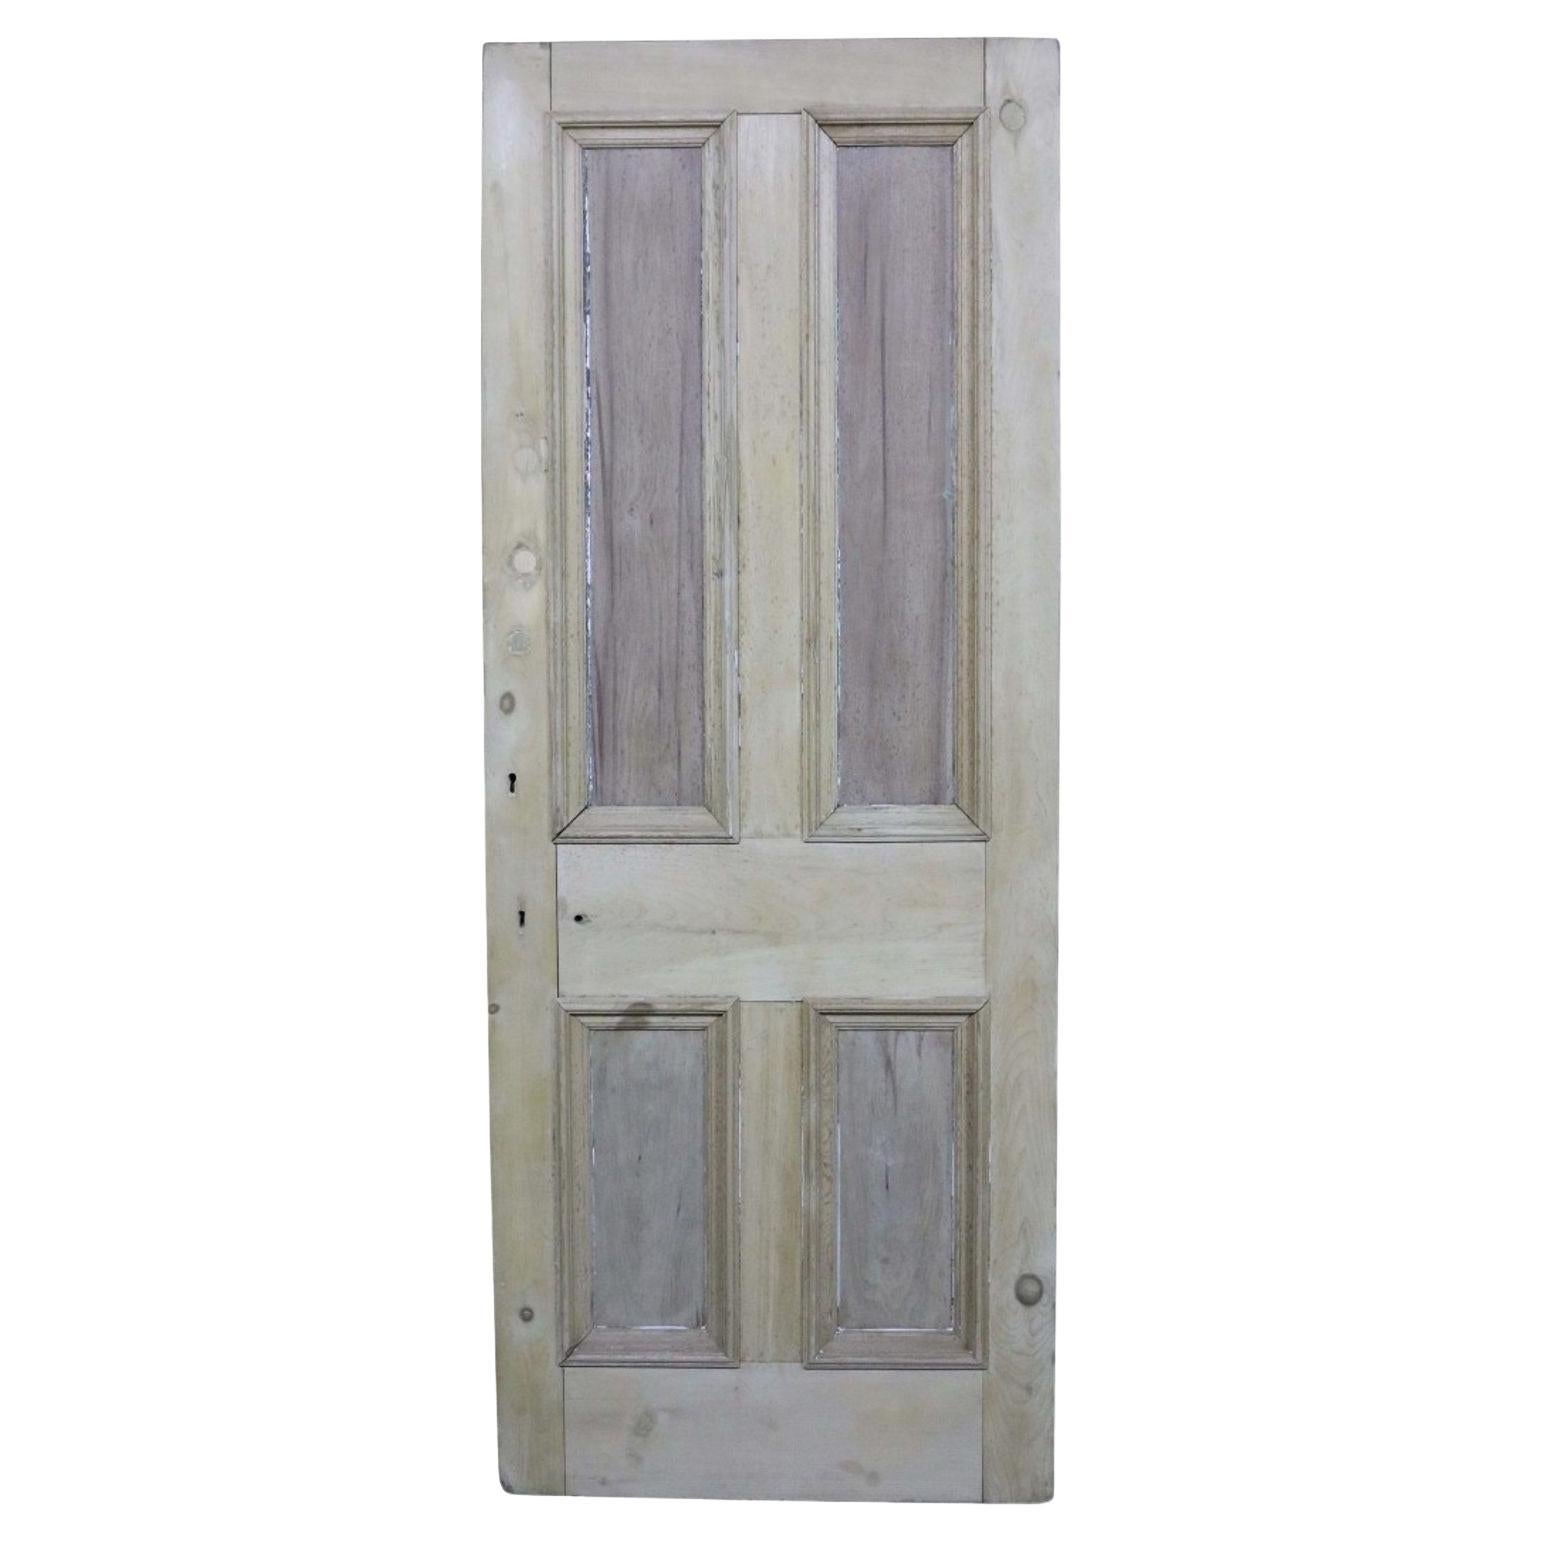 A Reclaimed Pine Four Panel Front Door